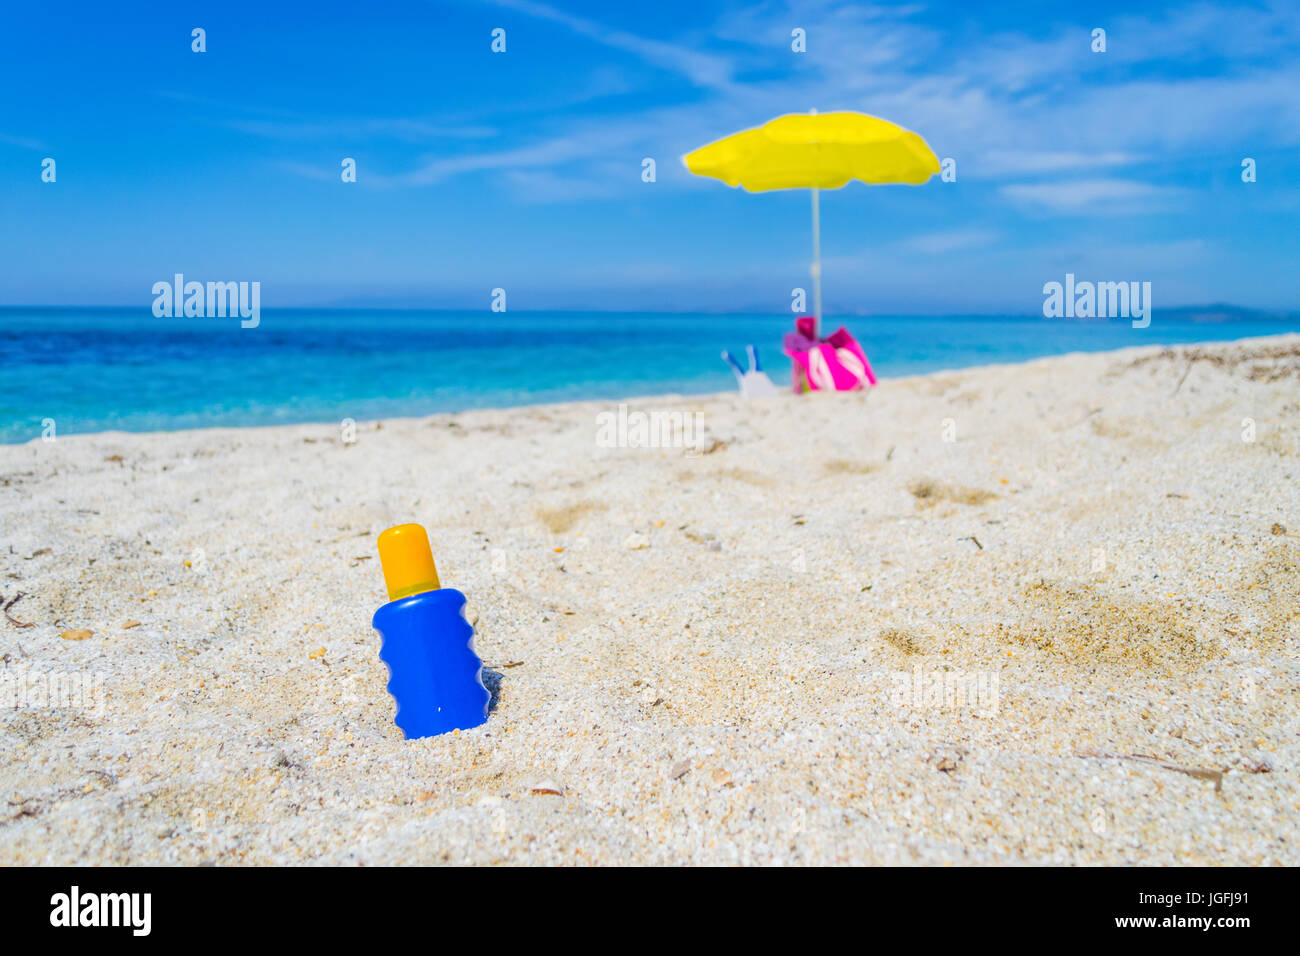 suntan lotion bottles on the sand Stock Photo